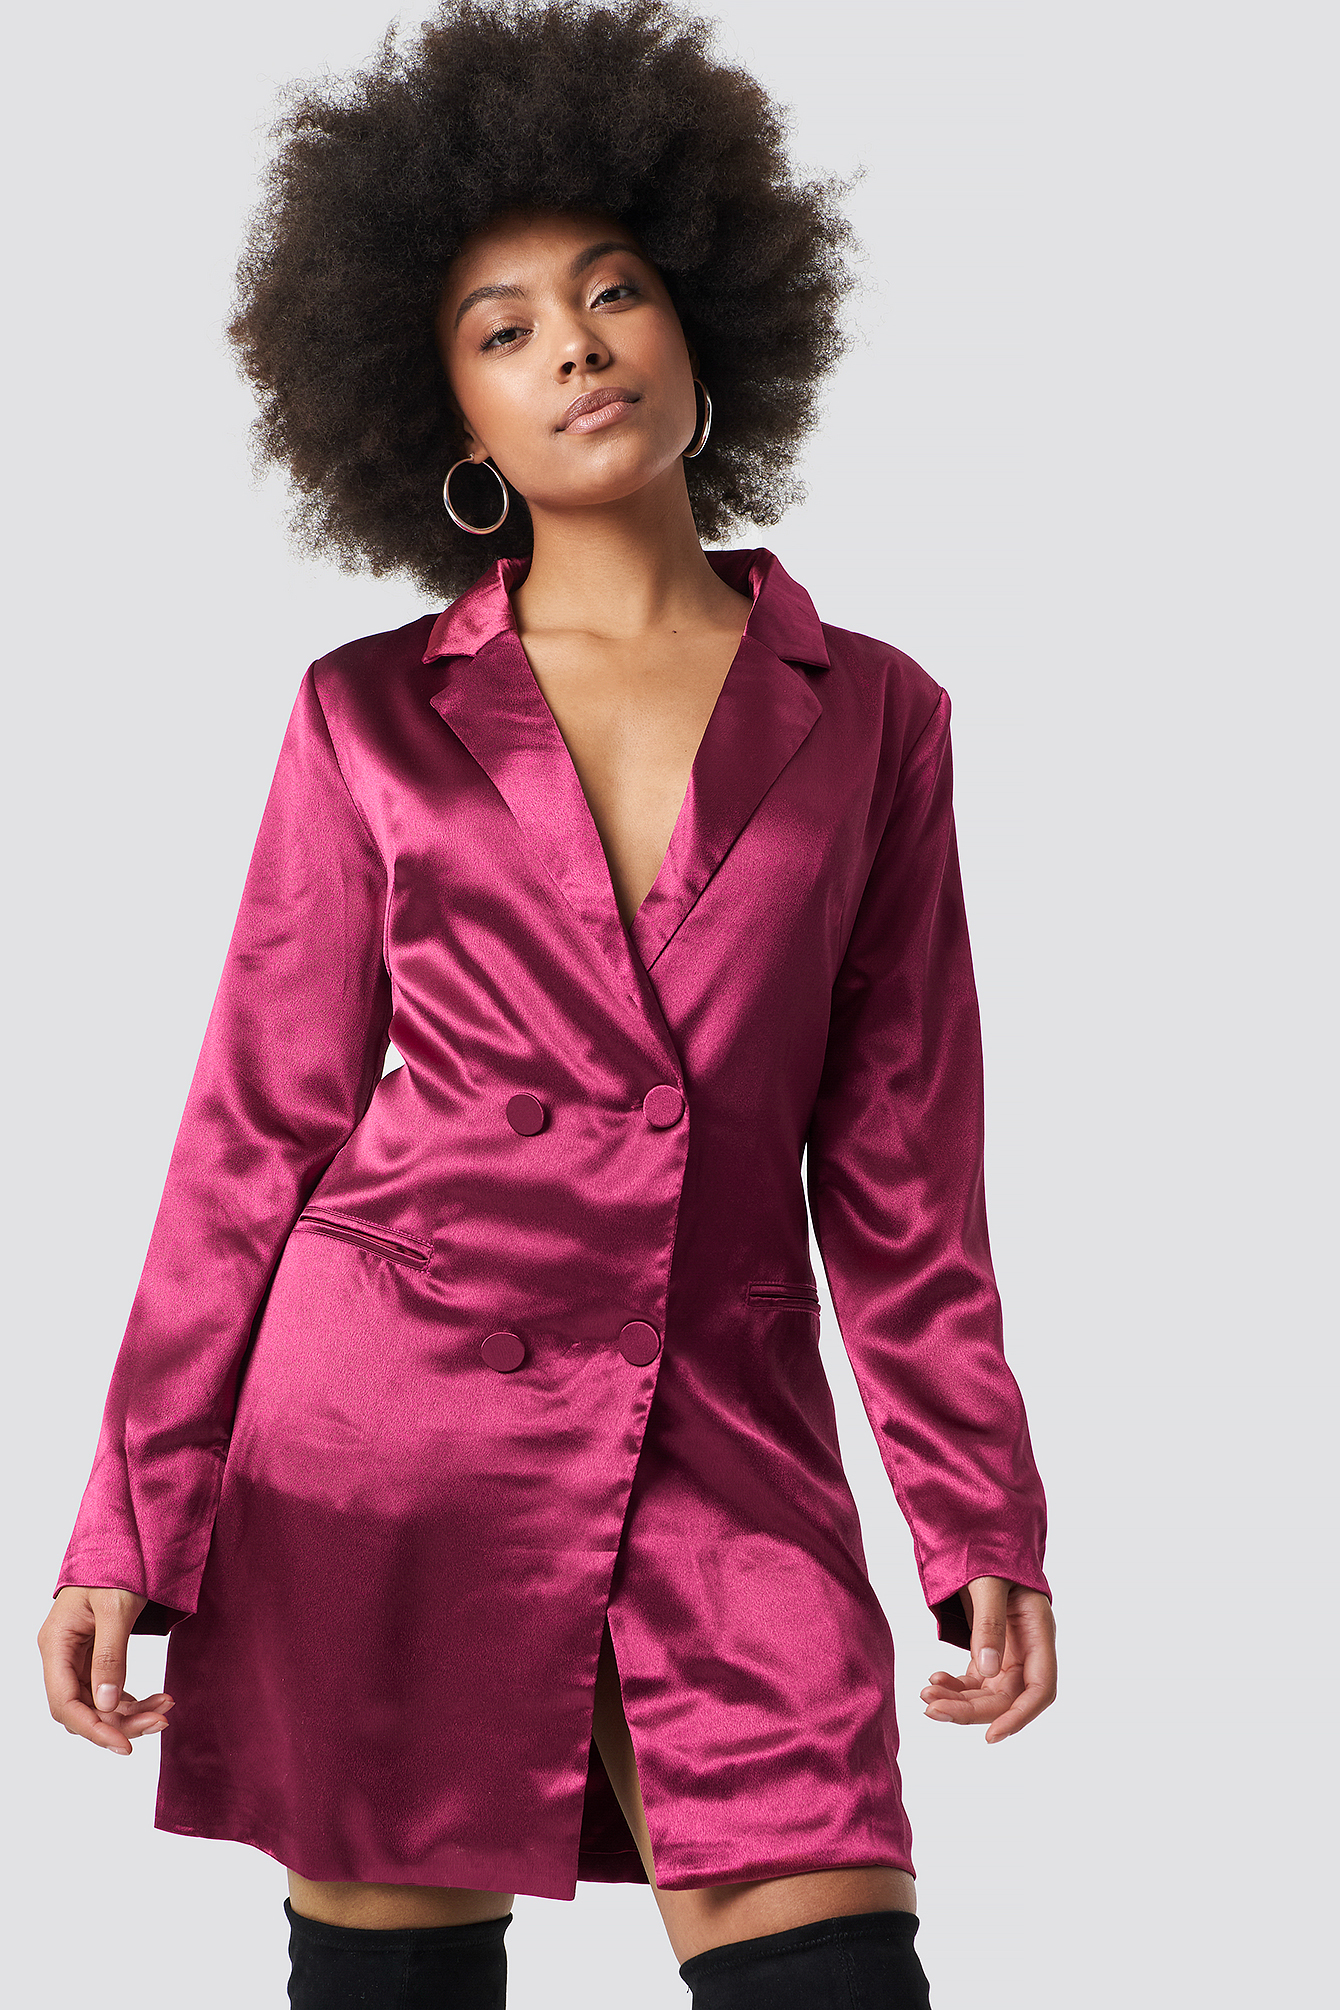 GLAMOROUS Satin Suit Dress Pink